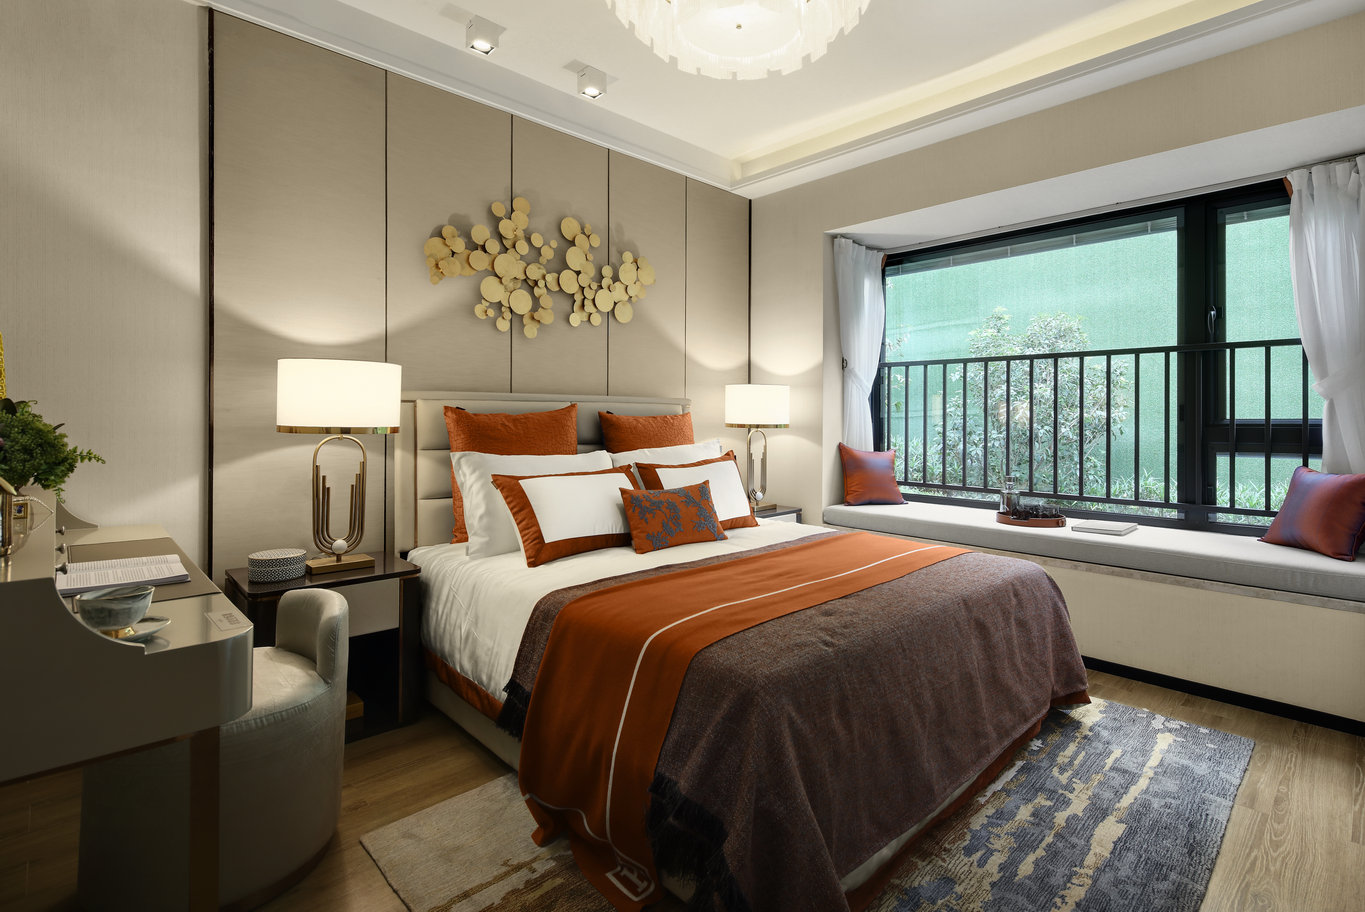 奢雅的背景墙设计，与精致的床品相搭配，主卧空间端庄典雅，高贵华丽。